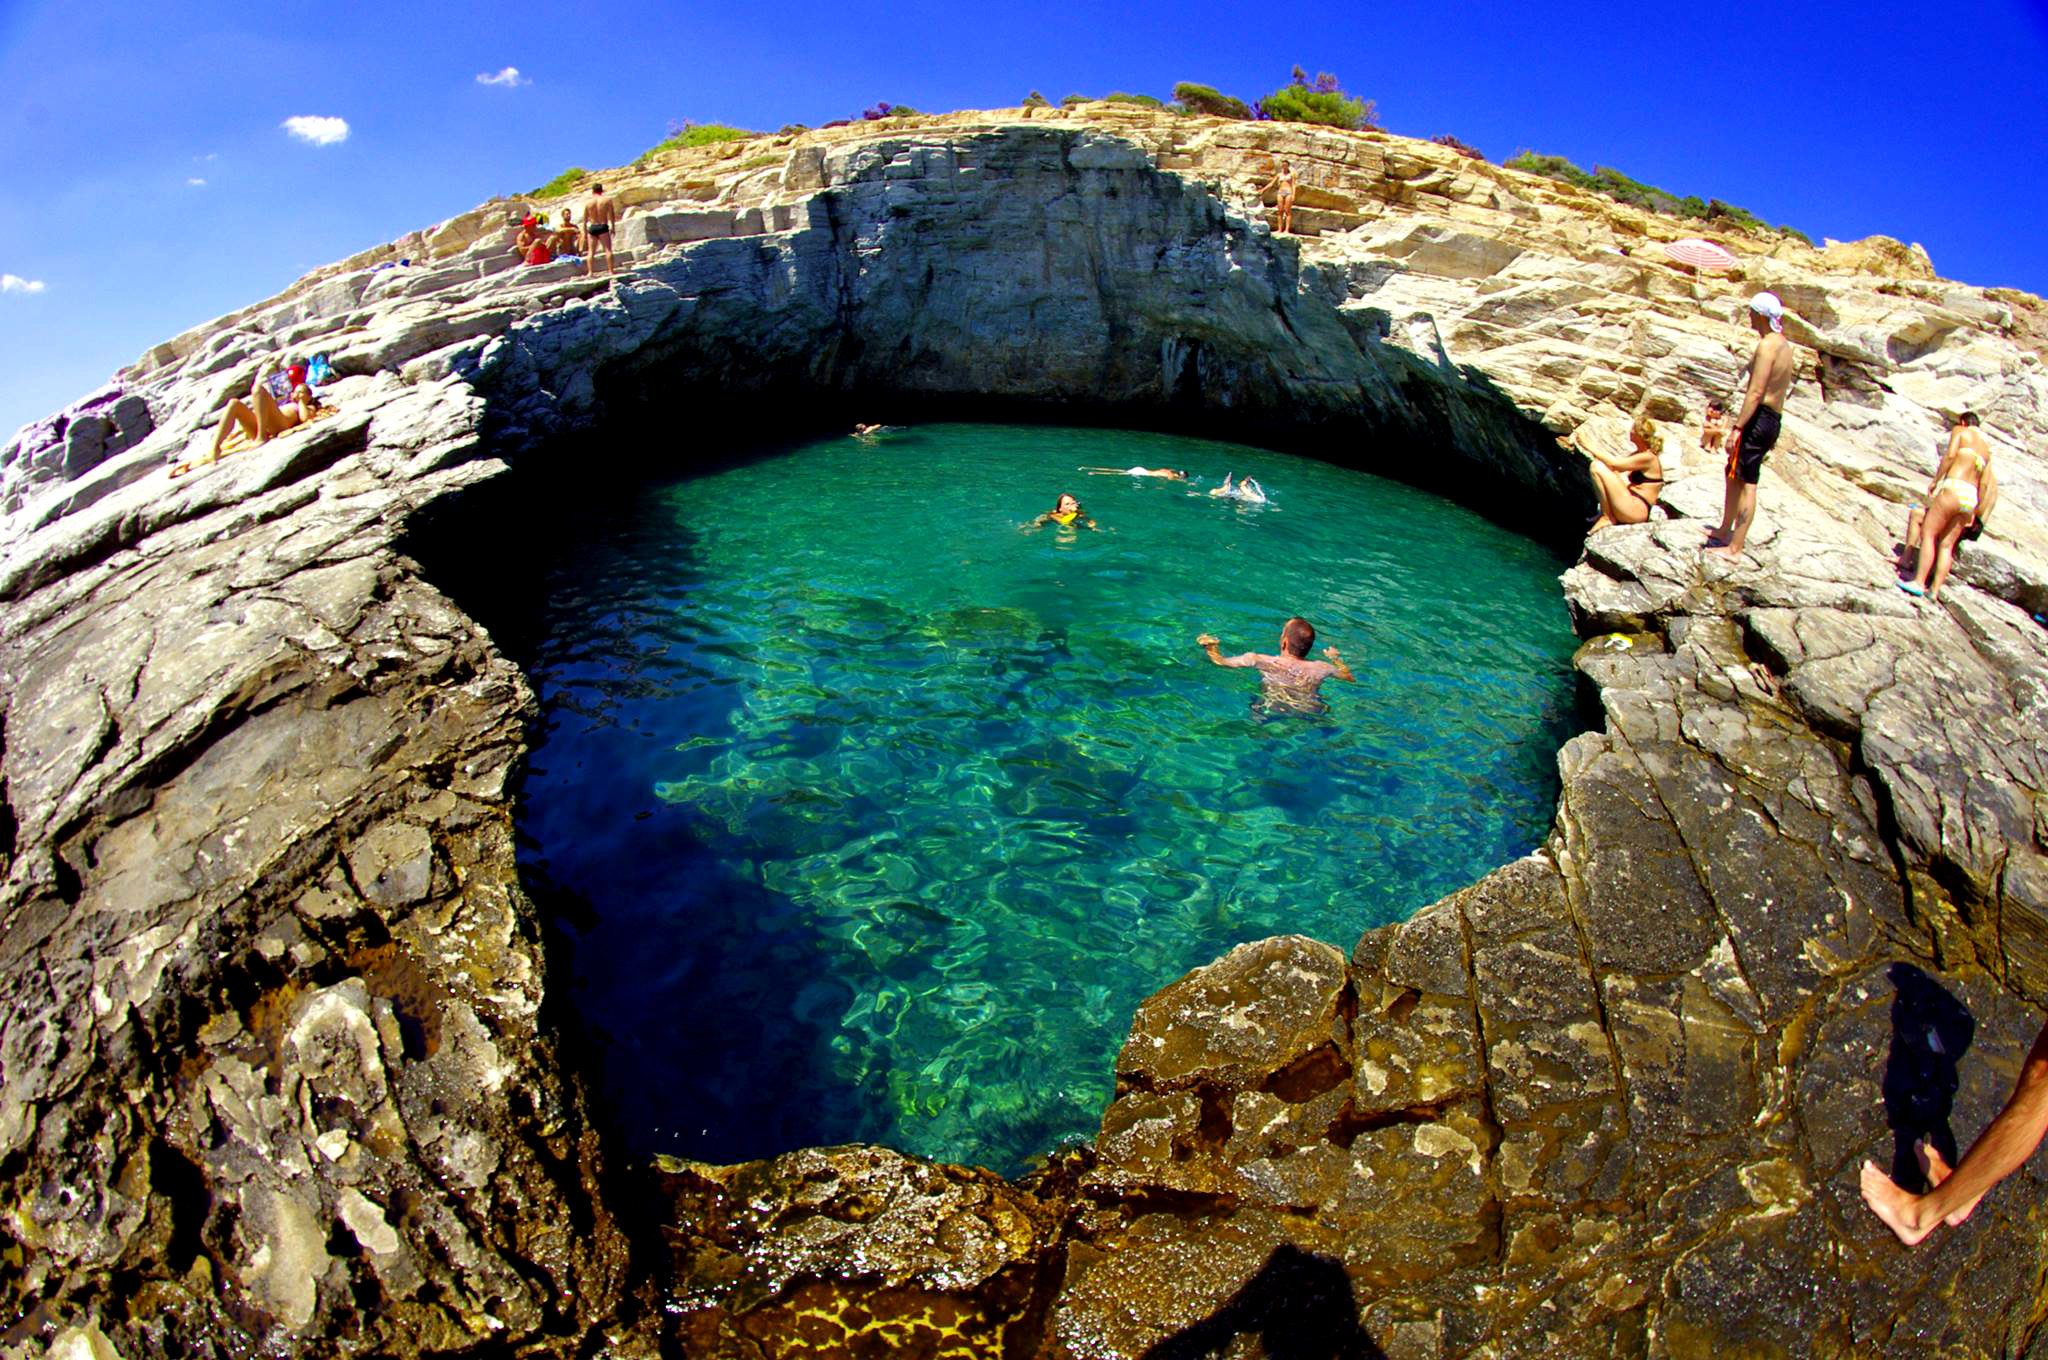 Природный бассейн "Лагуна Гиола", остров Тассос